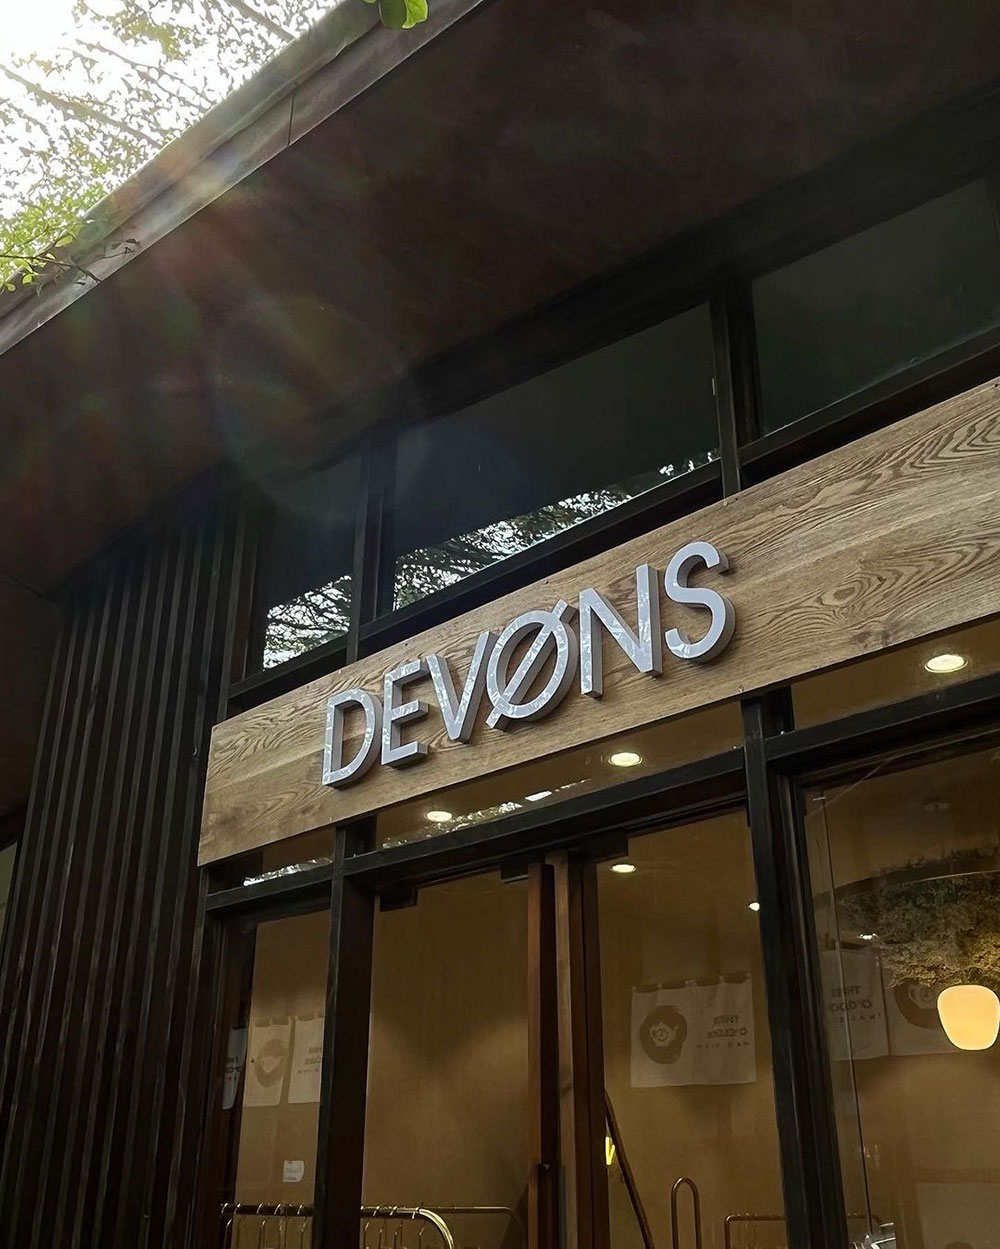 Devons Studio khai trương cửa hàng đầu tiên sau 3 năm hoạt động